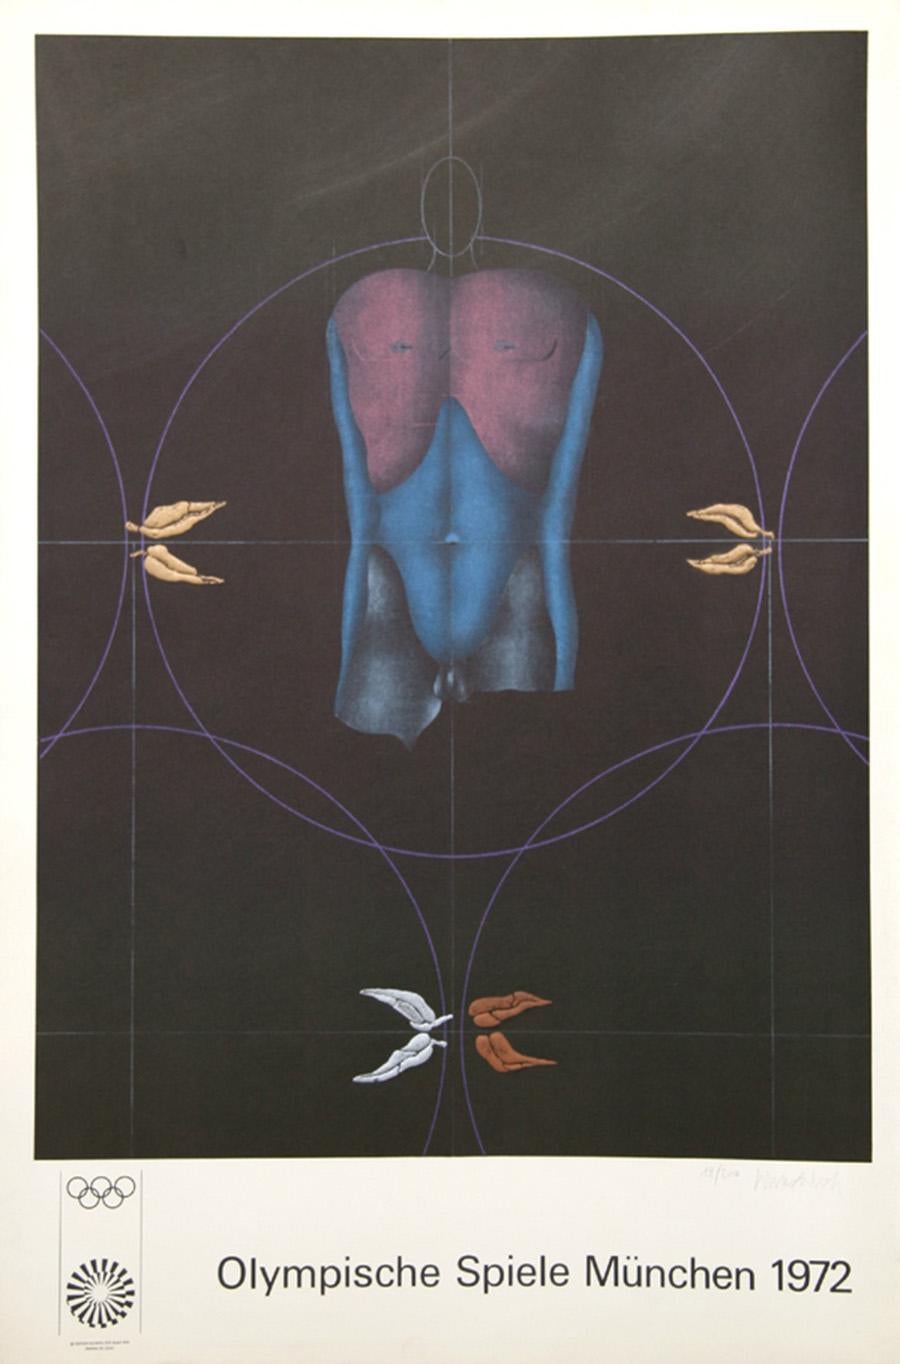 Artiste : Paul Wunderlich (1927 - 2010)
Titre : Olympische Spiele Muenchen
Année : 1972
Médium : Lithographie Poster monté sur lin
Edition : 3000
Taille : 106,68 cm x 69,85 cm (42 in. x 27.5 in.)